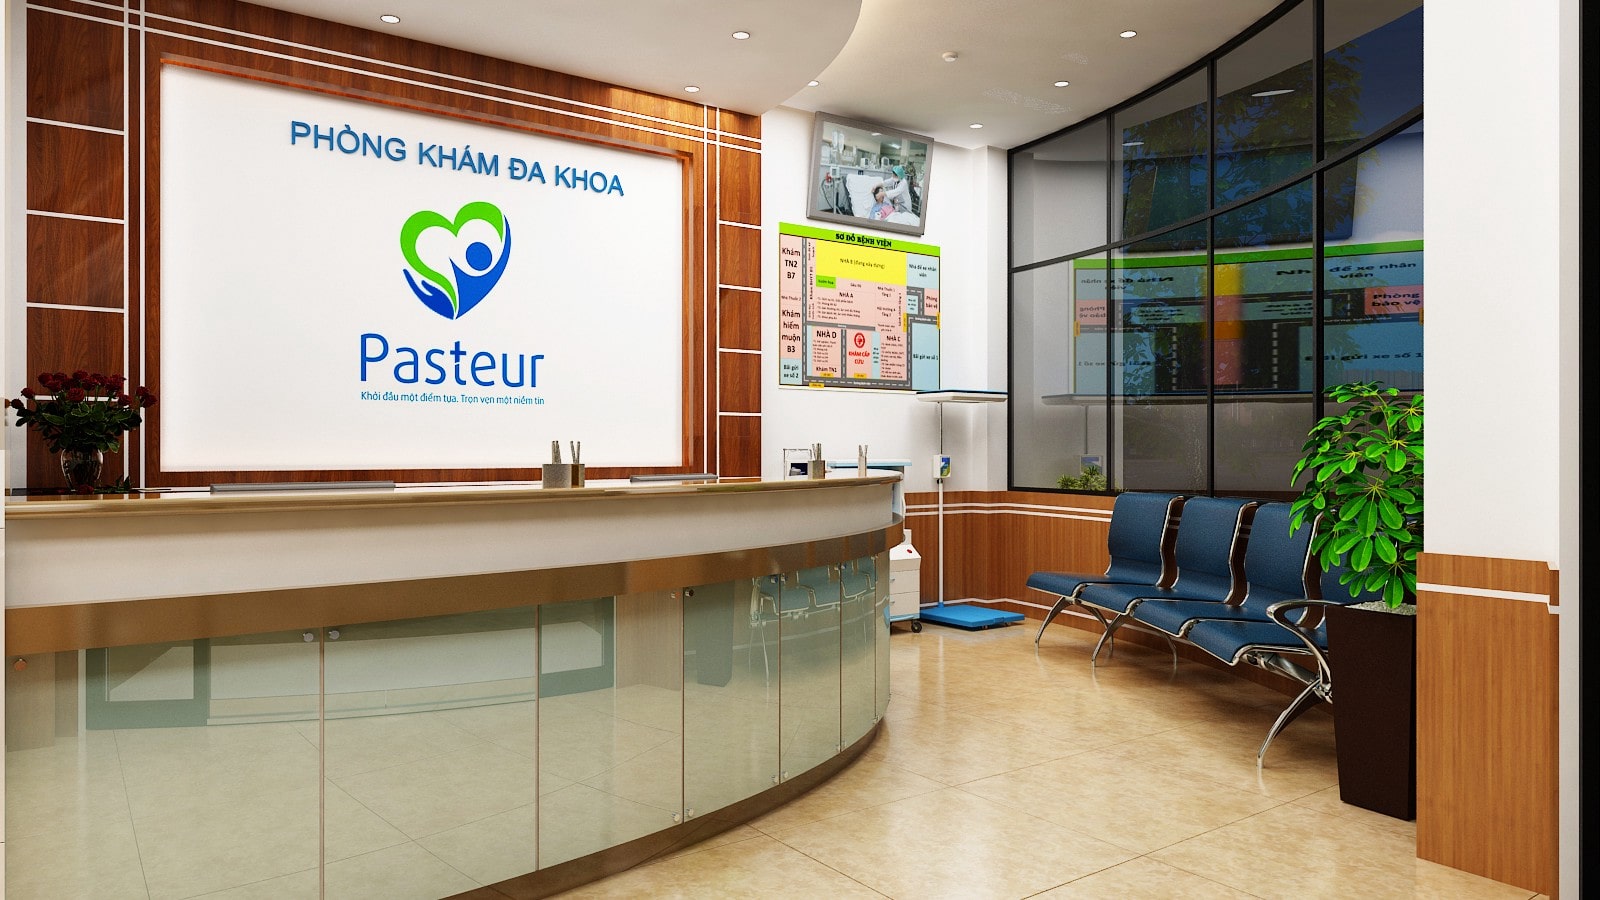 Phòng khám đa khoa Pasteur